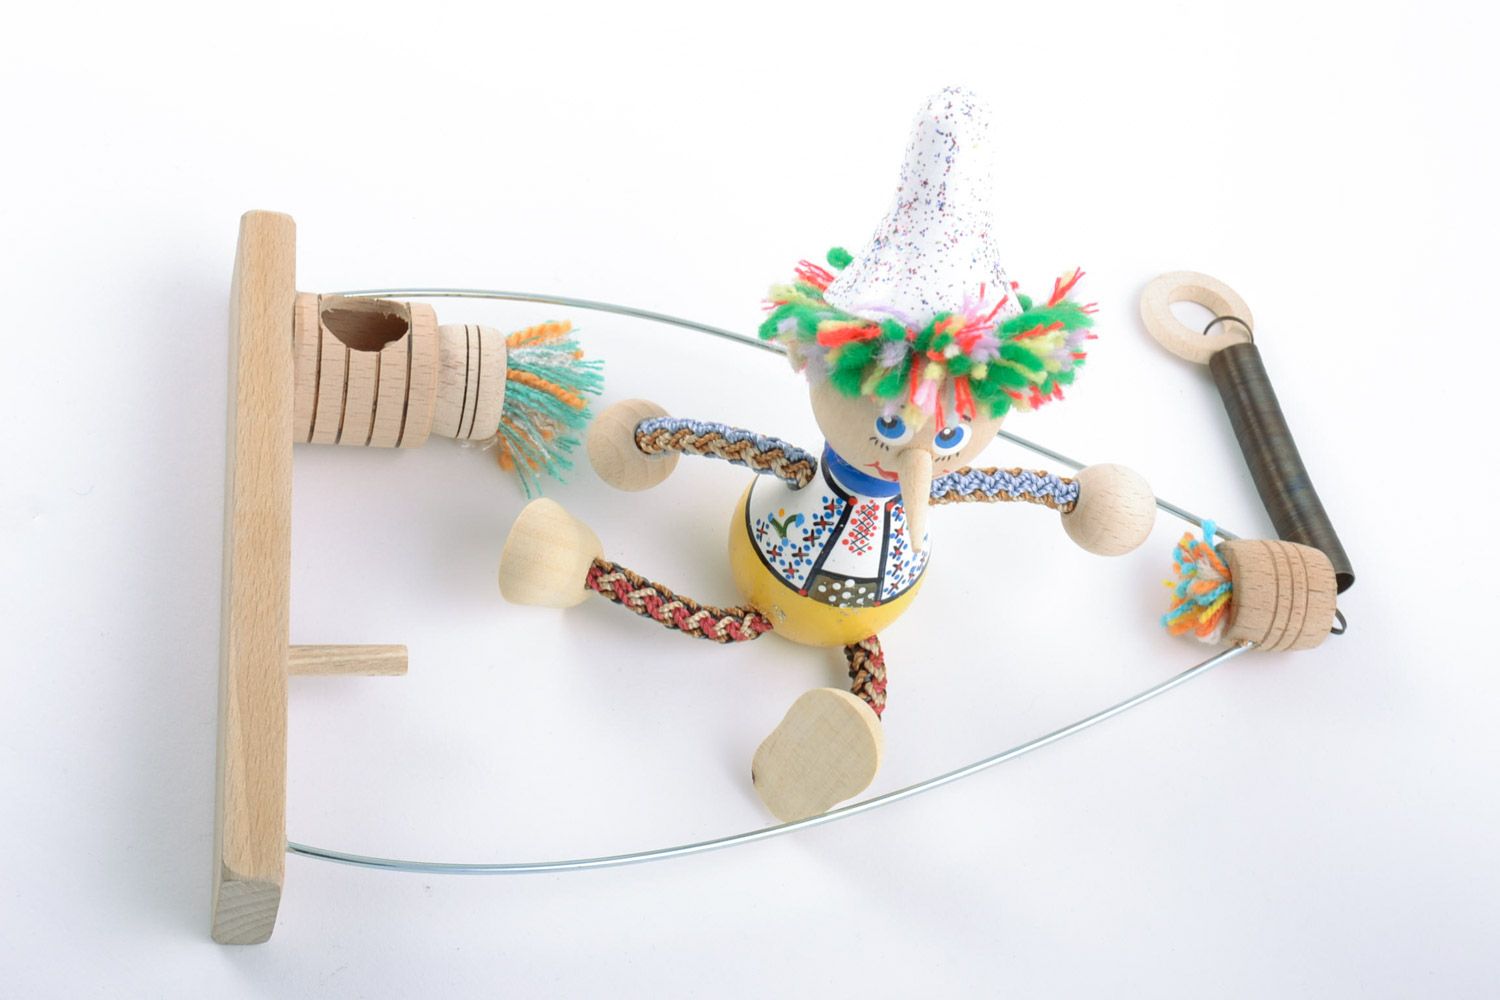 Helles schönes originelles handgemachtes Öko Spielzeug aus Holz Junge auf Bank  foto 5